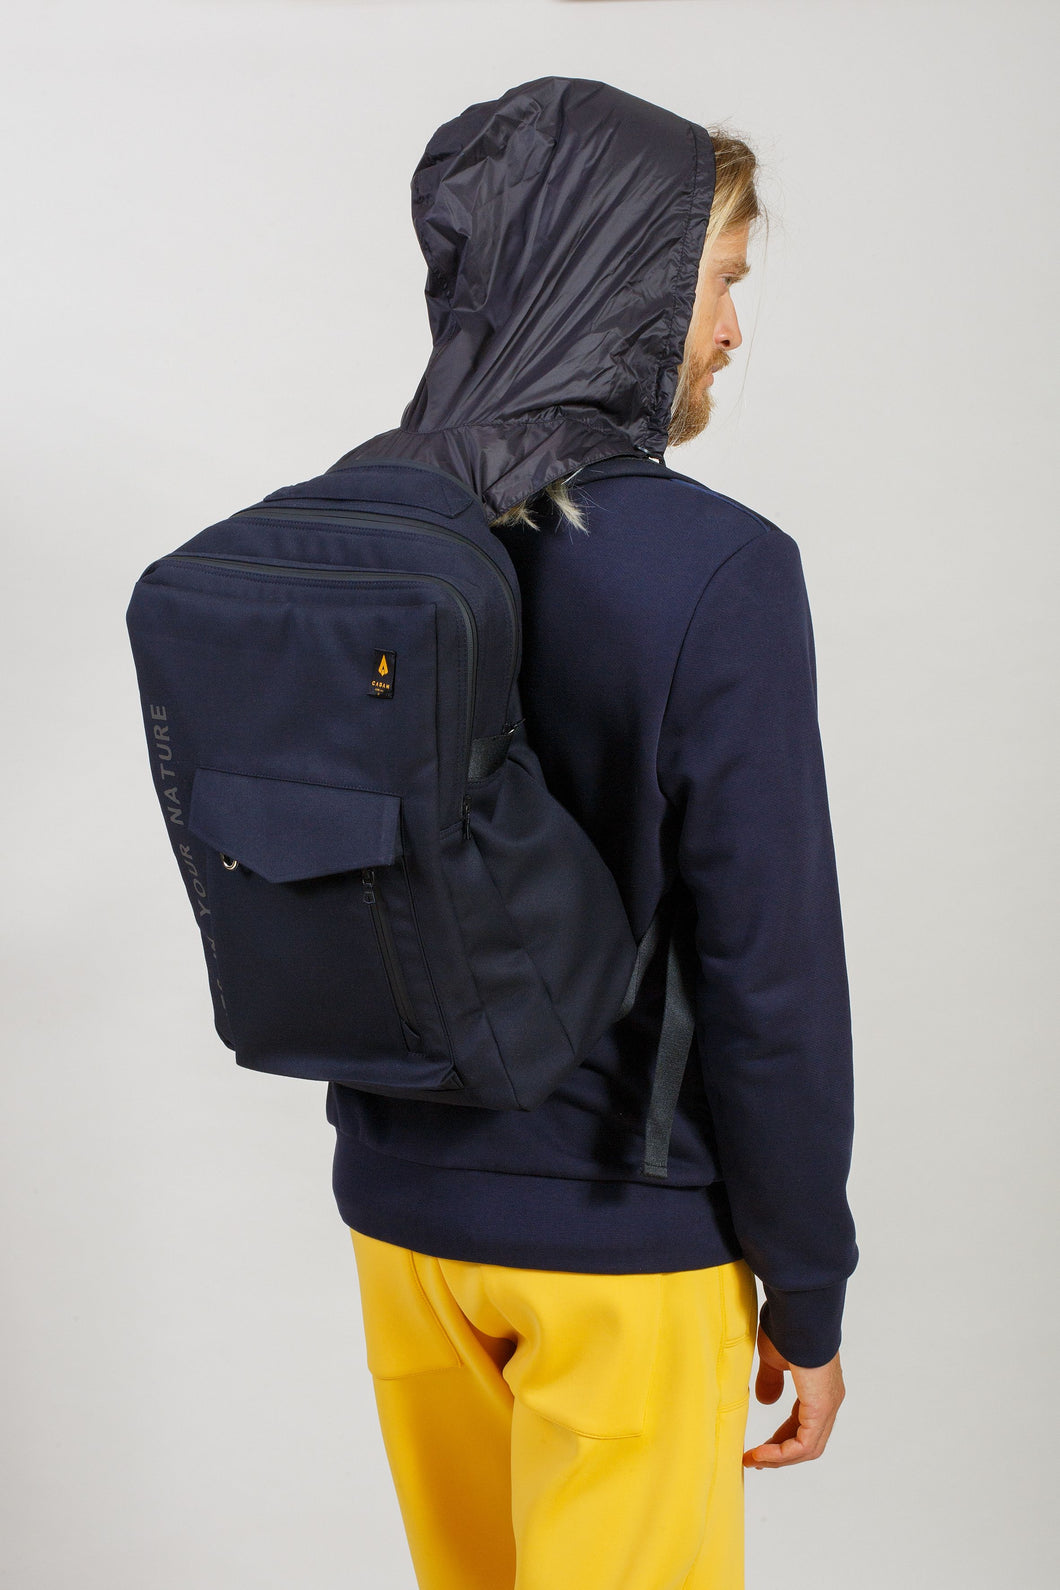 Makalú - Technical Backpack